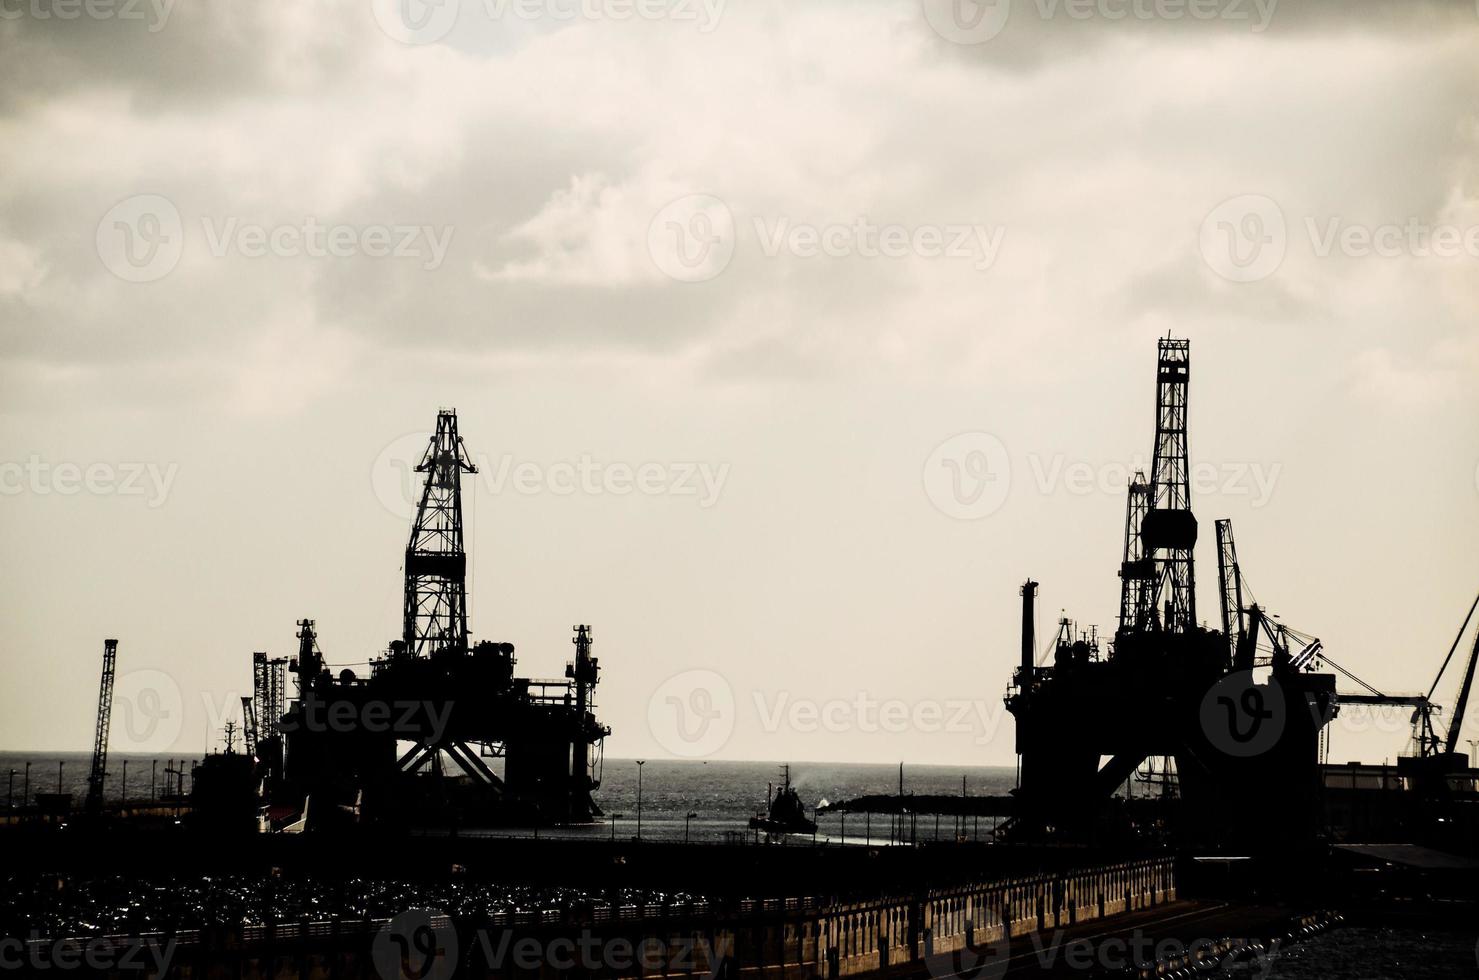 Sea platforms silhouettes photo